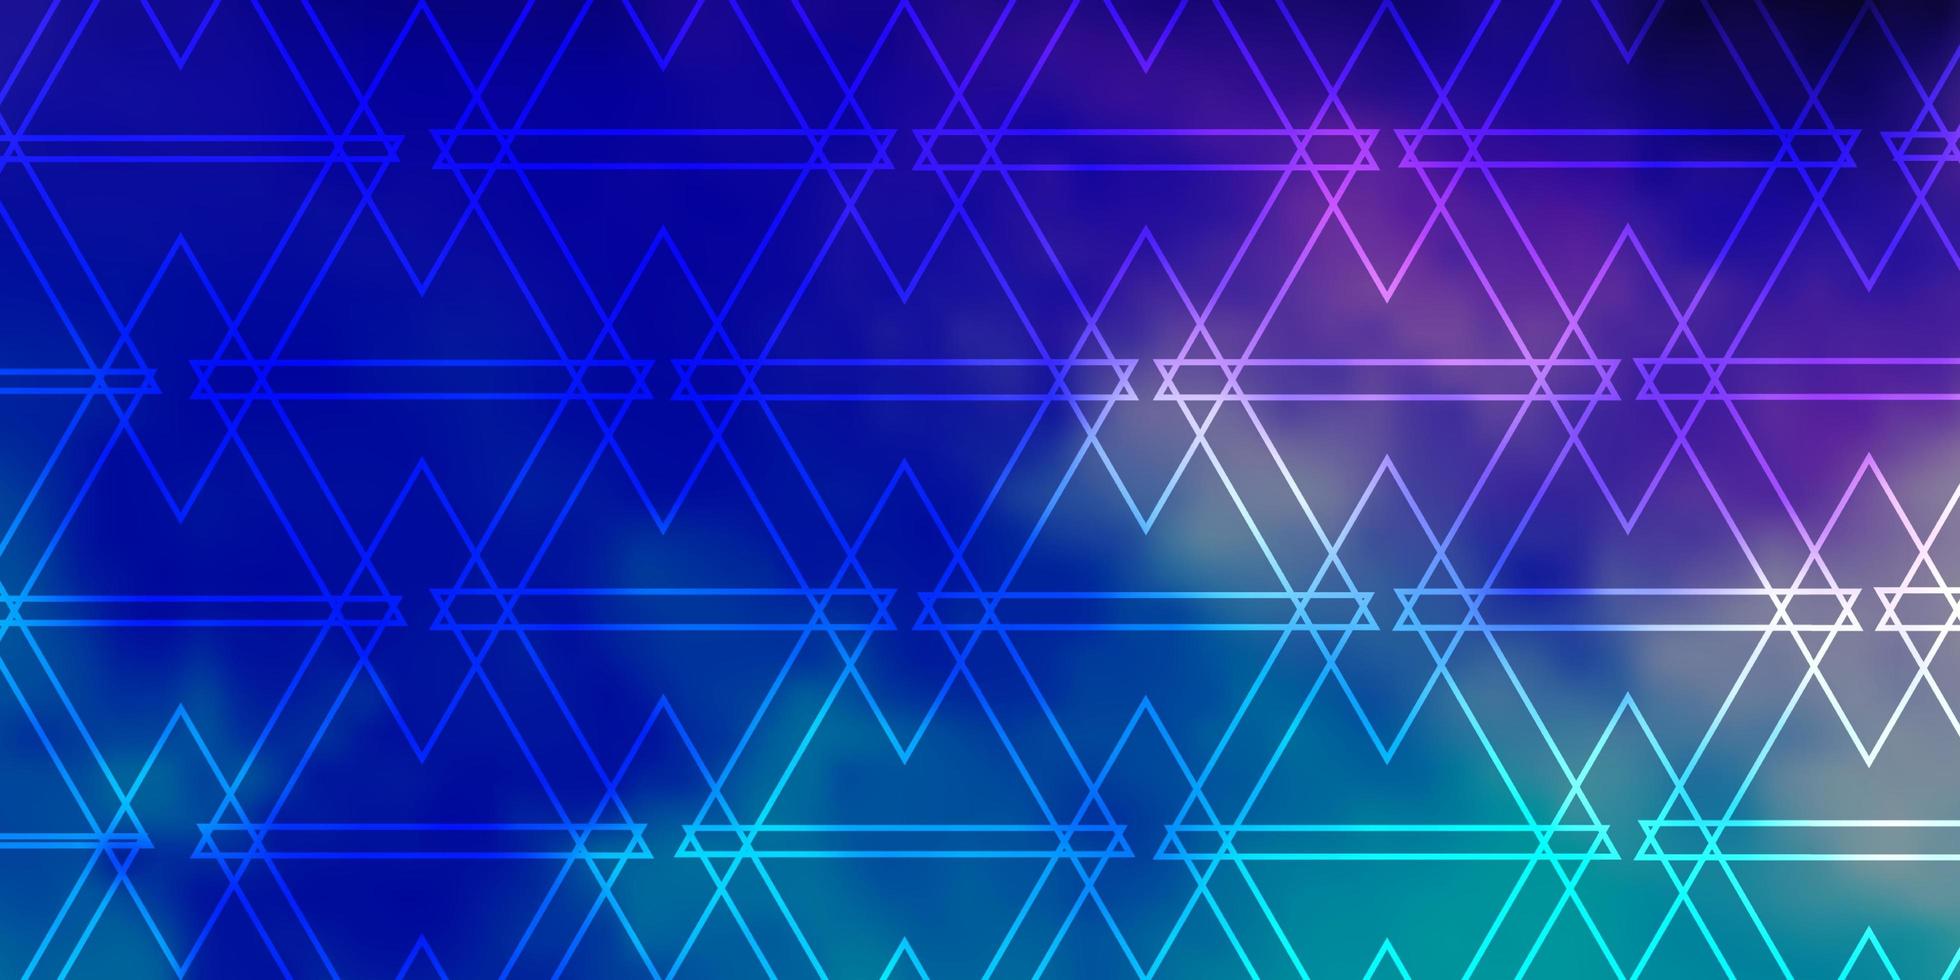 donkerroze, blauwe achtergrond met lijnen, driehoeken. vector